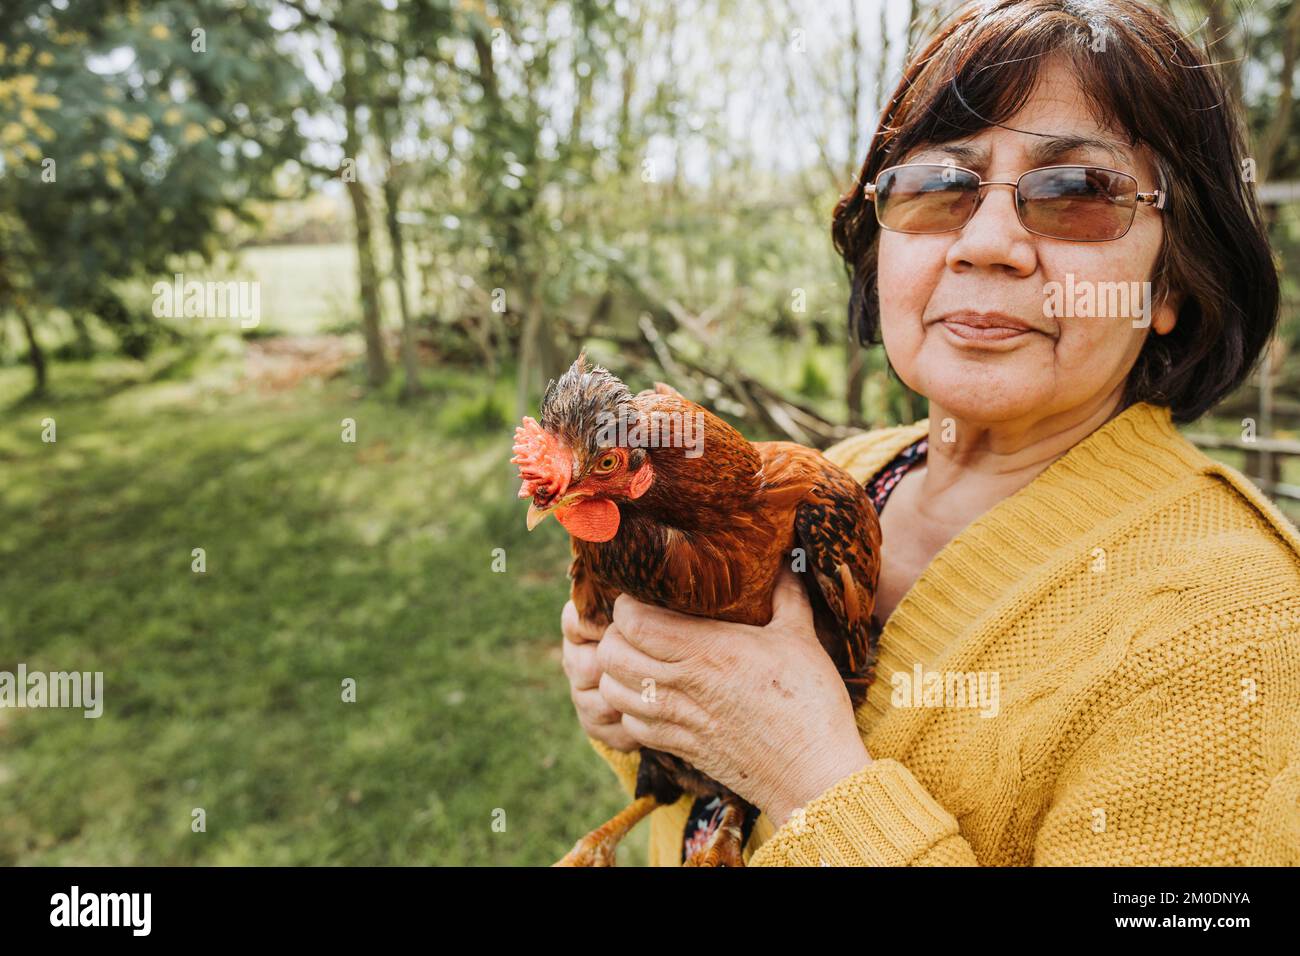 Gros plan d'une paysanne latinelder latine tenant une race de poulet rouge dans un paysage rural. Copier l'espace Banque D'Images